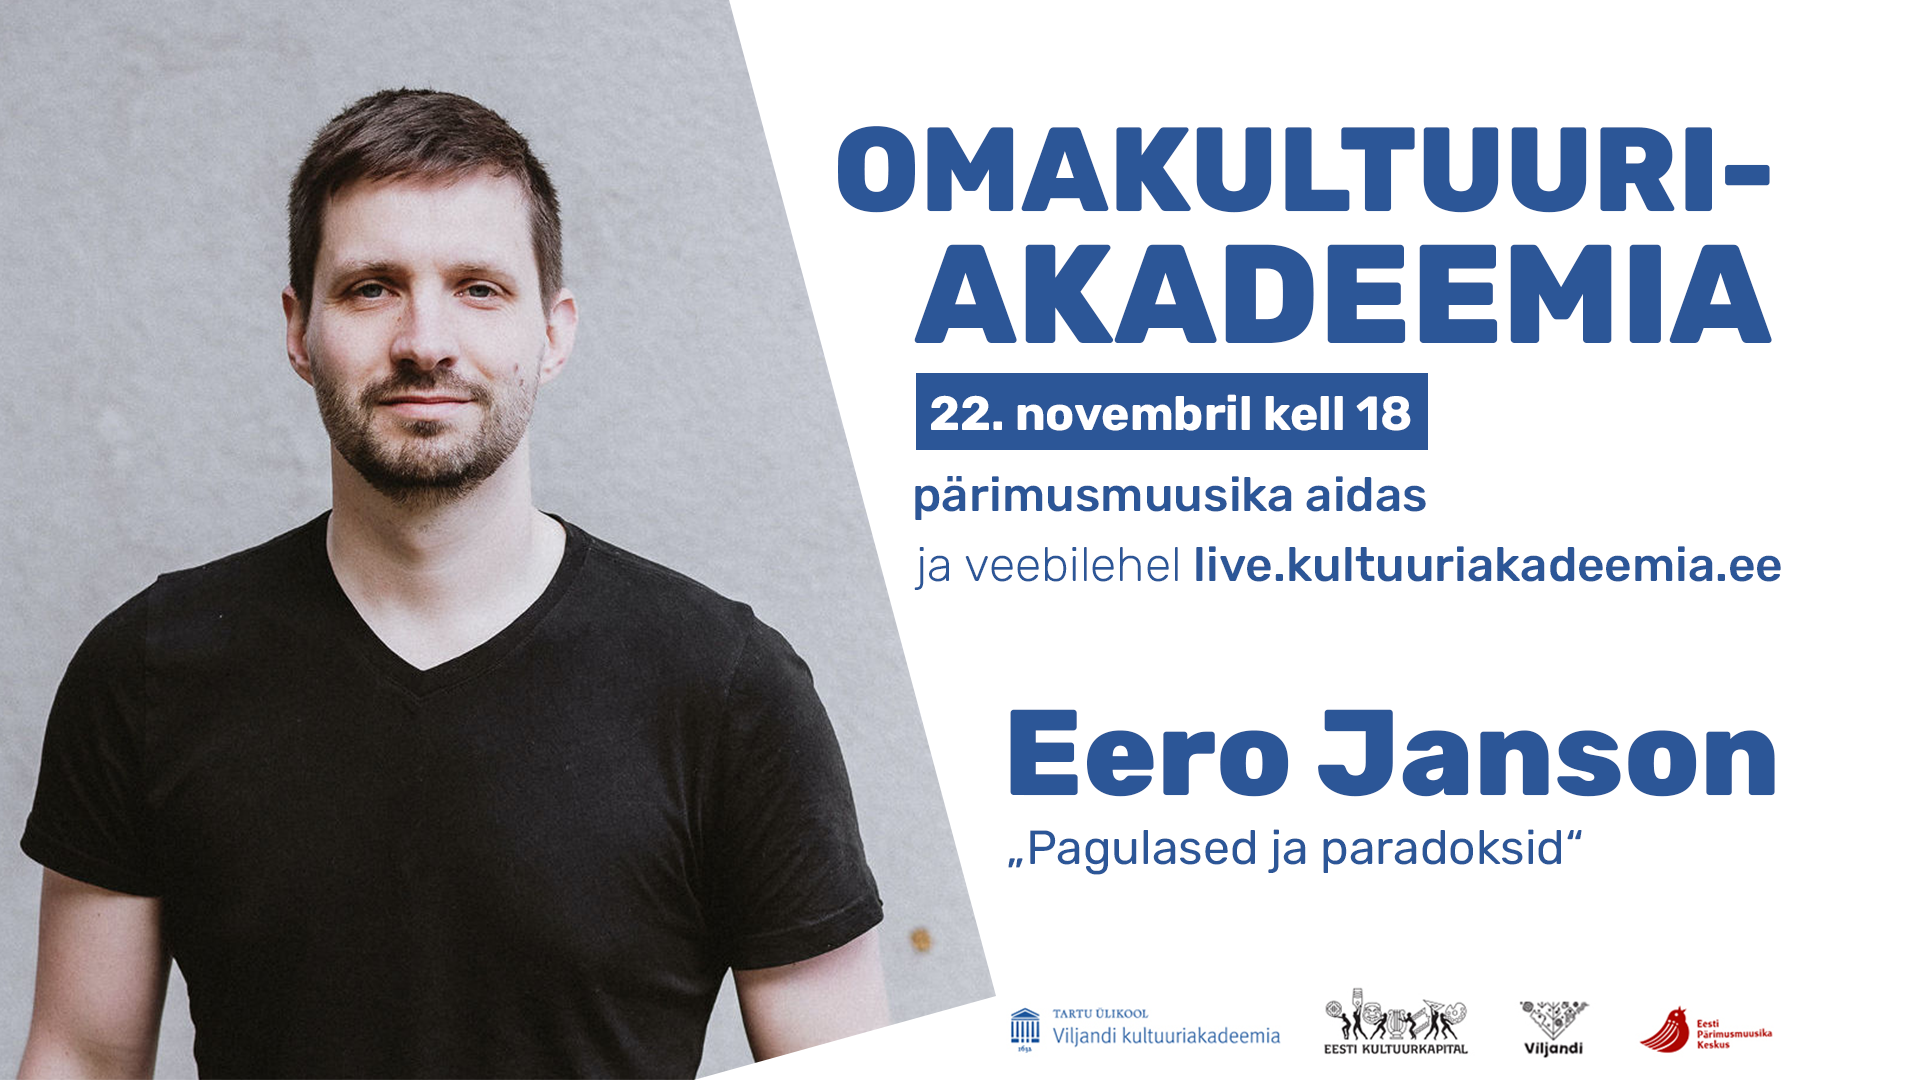 Omakultuuriakadeemia: Eero Janson - Tartu Ülikooli Viljandi kultuuriakadeemia